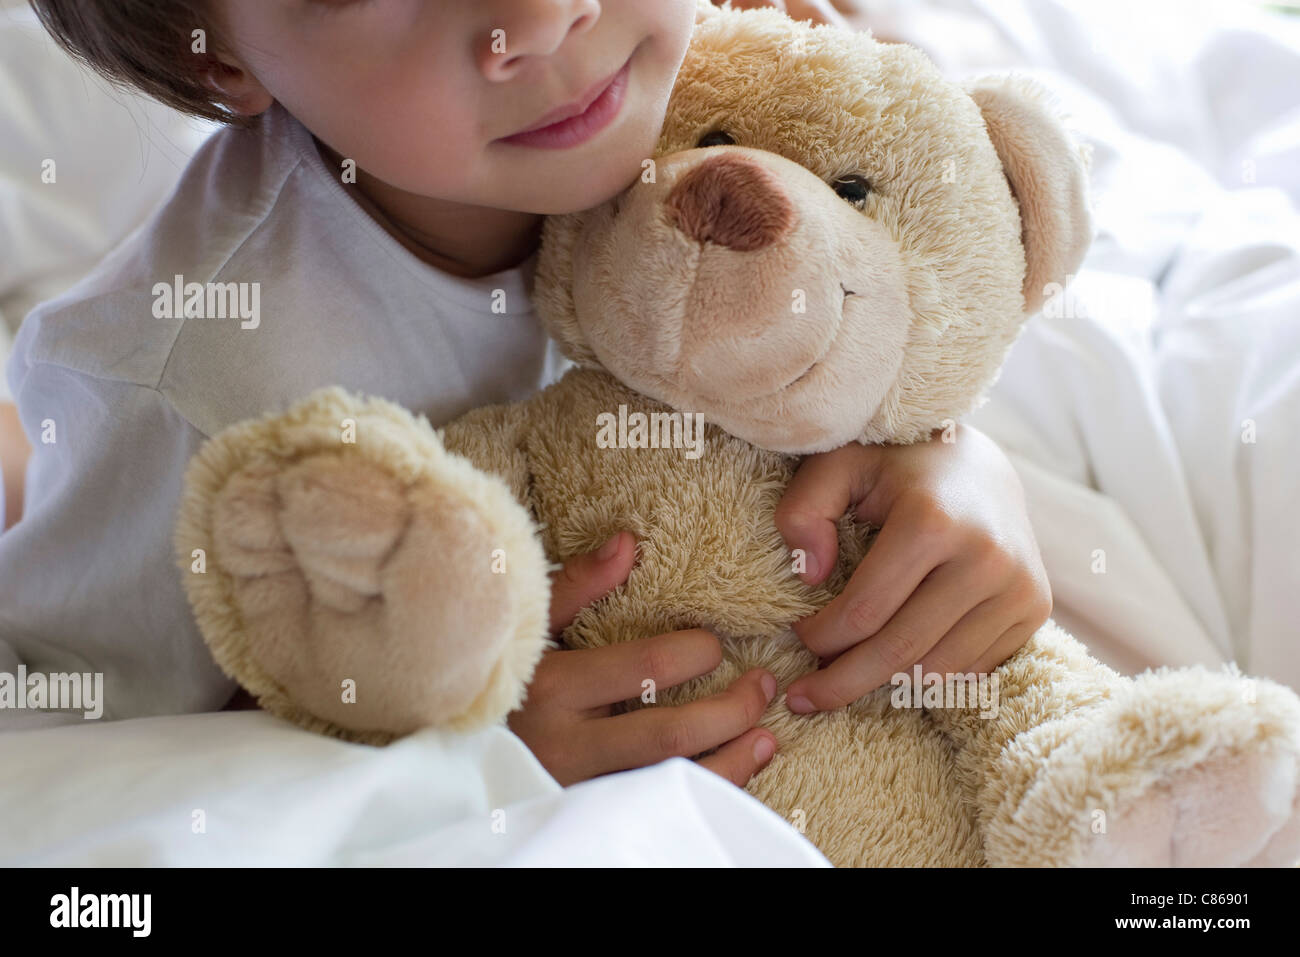 Little Boy abbracciando Teddy bear, ritagliato Foto Stock